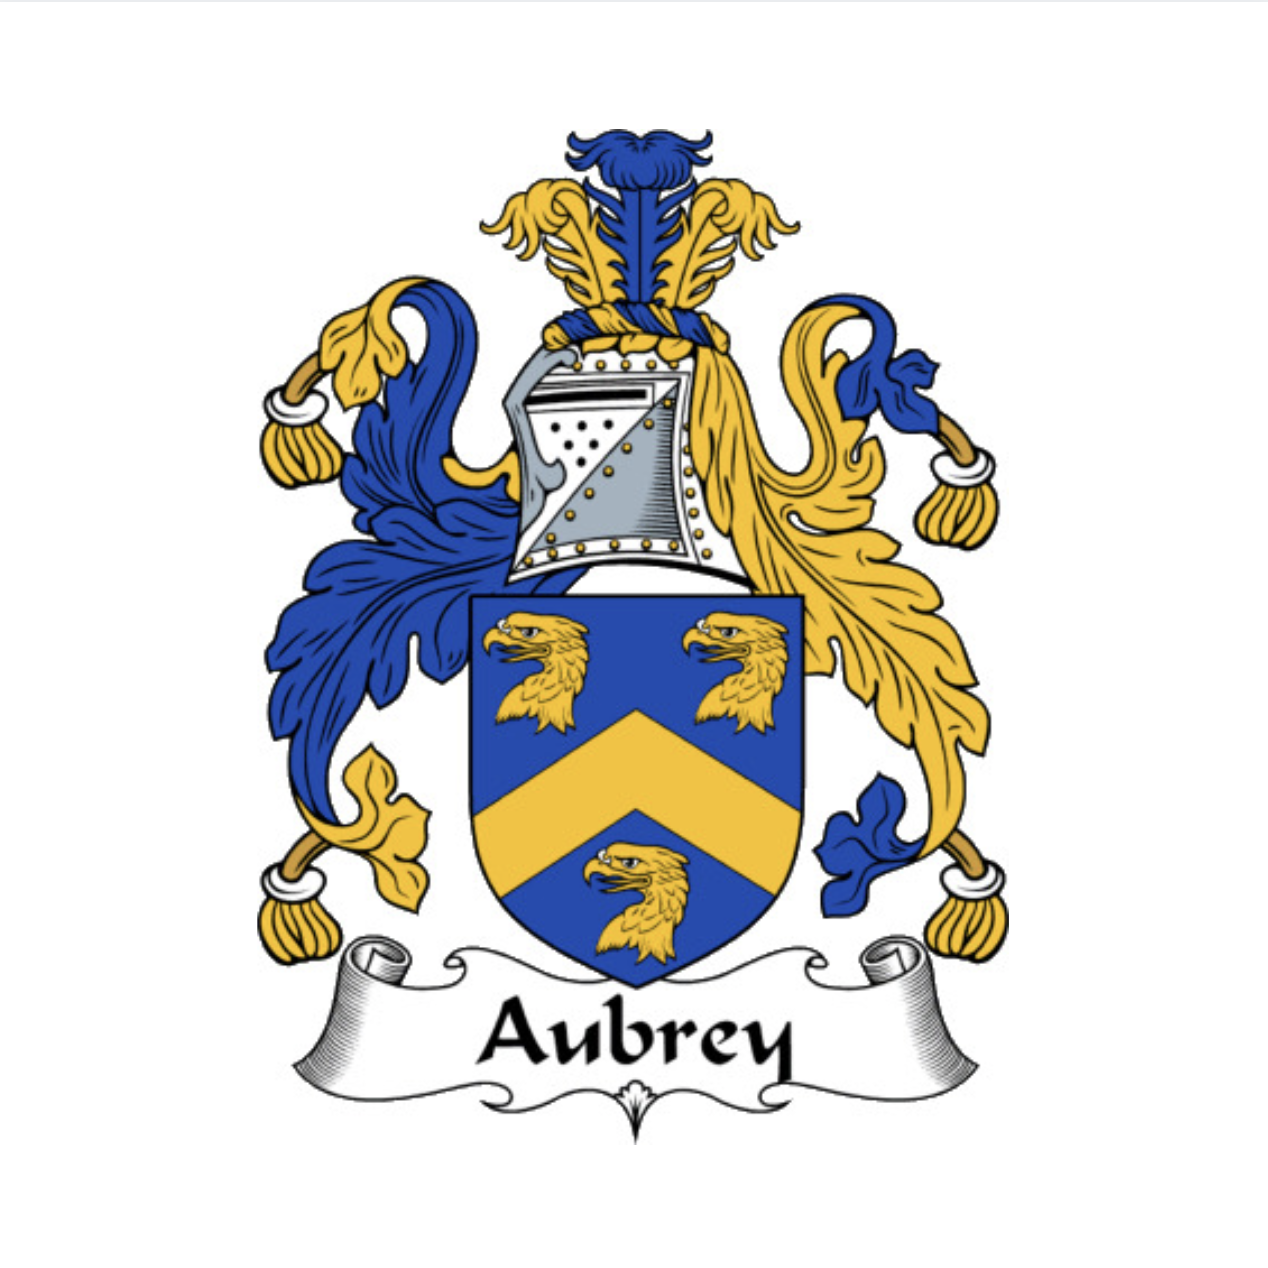 Aubrey, Wiki